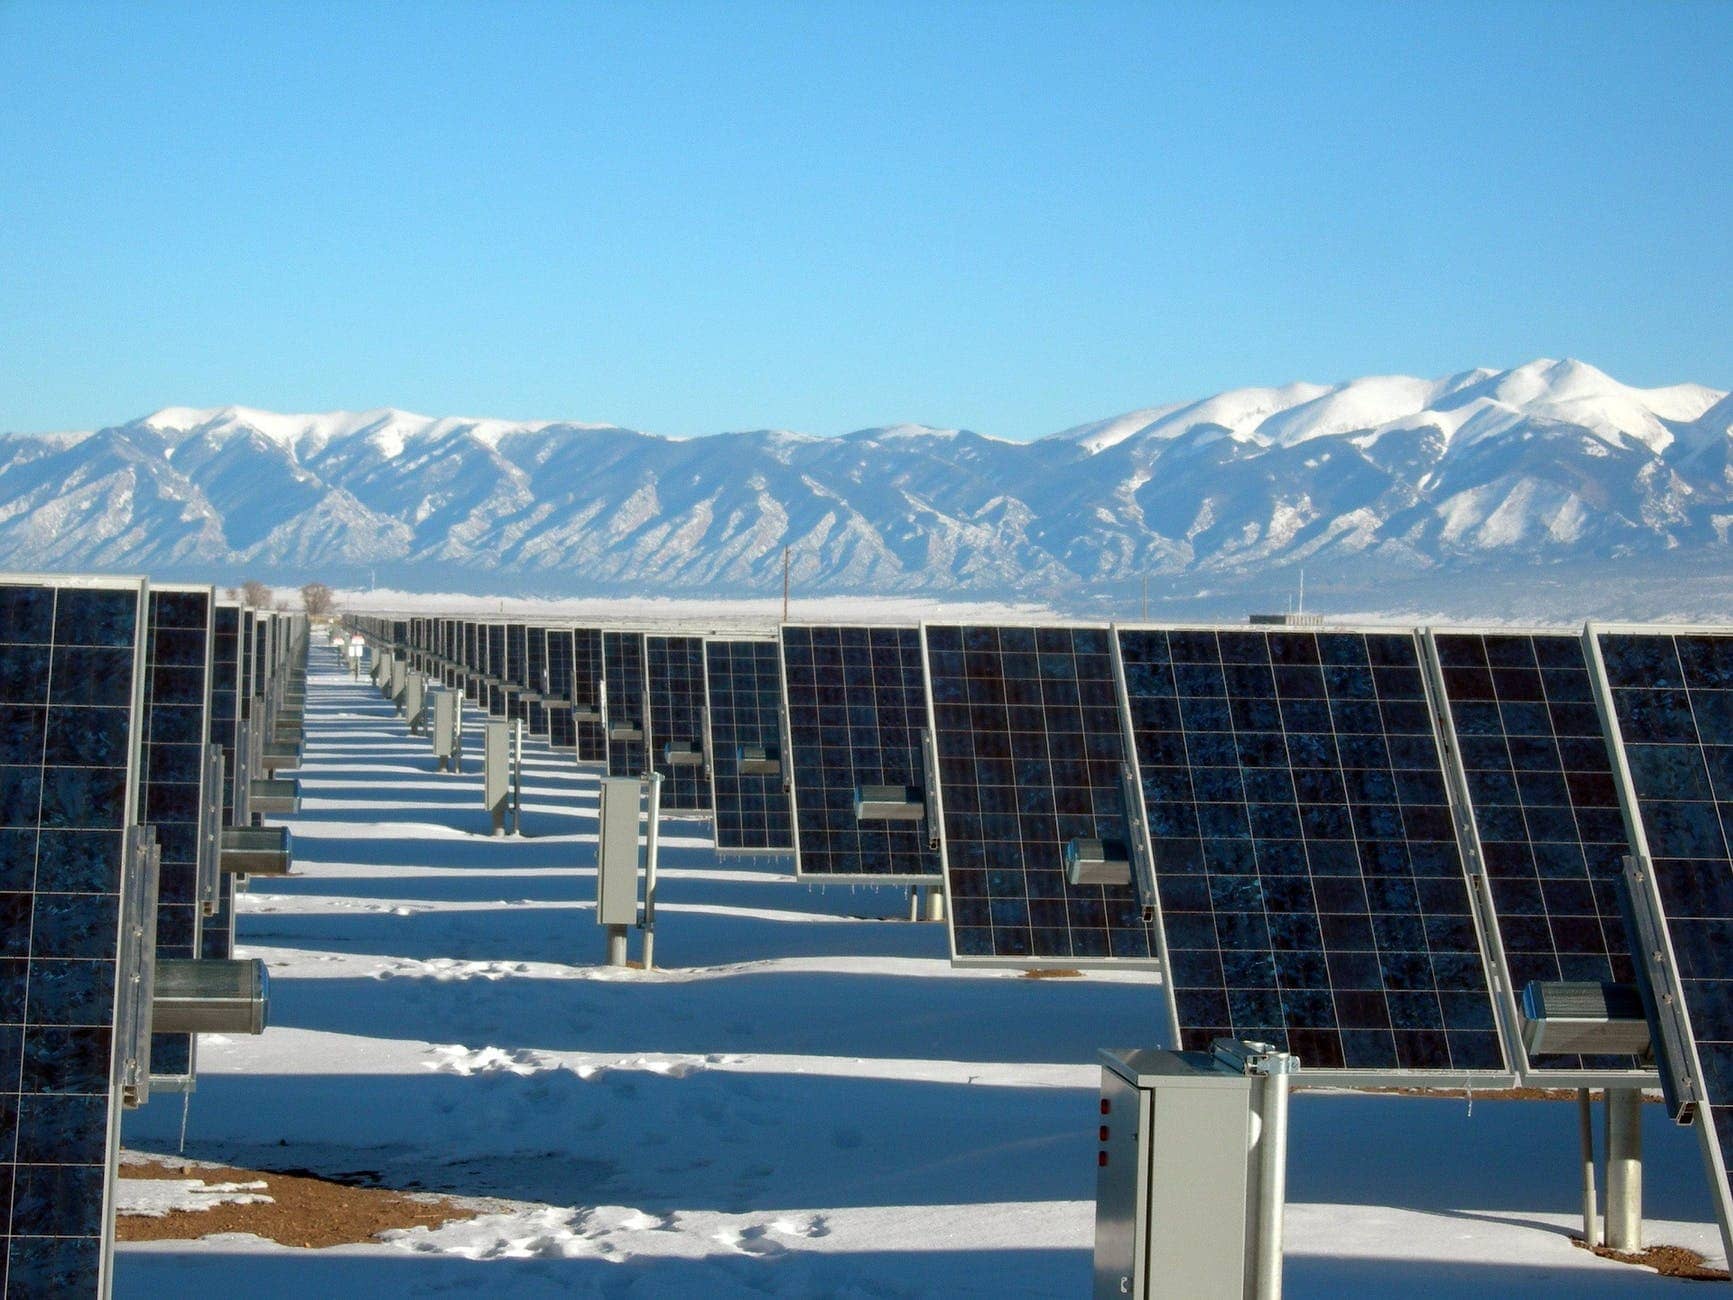 A Remote Solar Farm